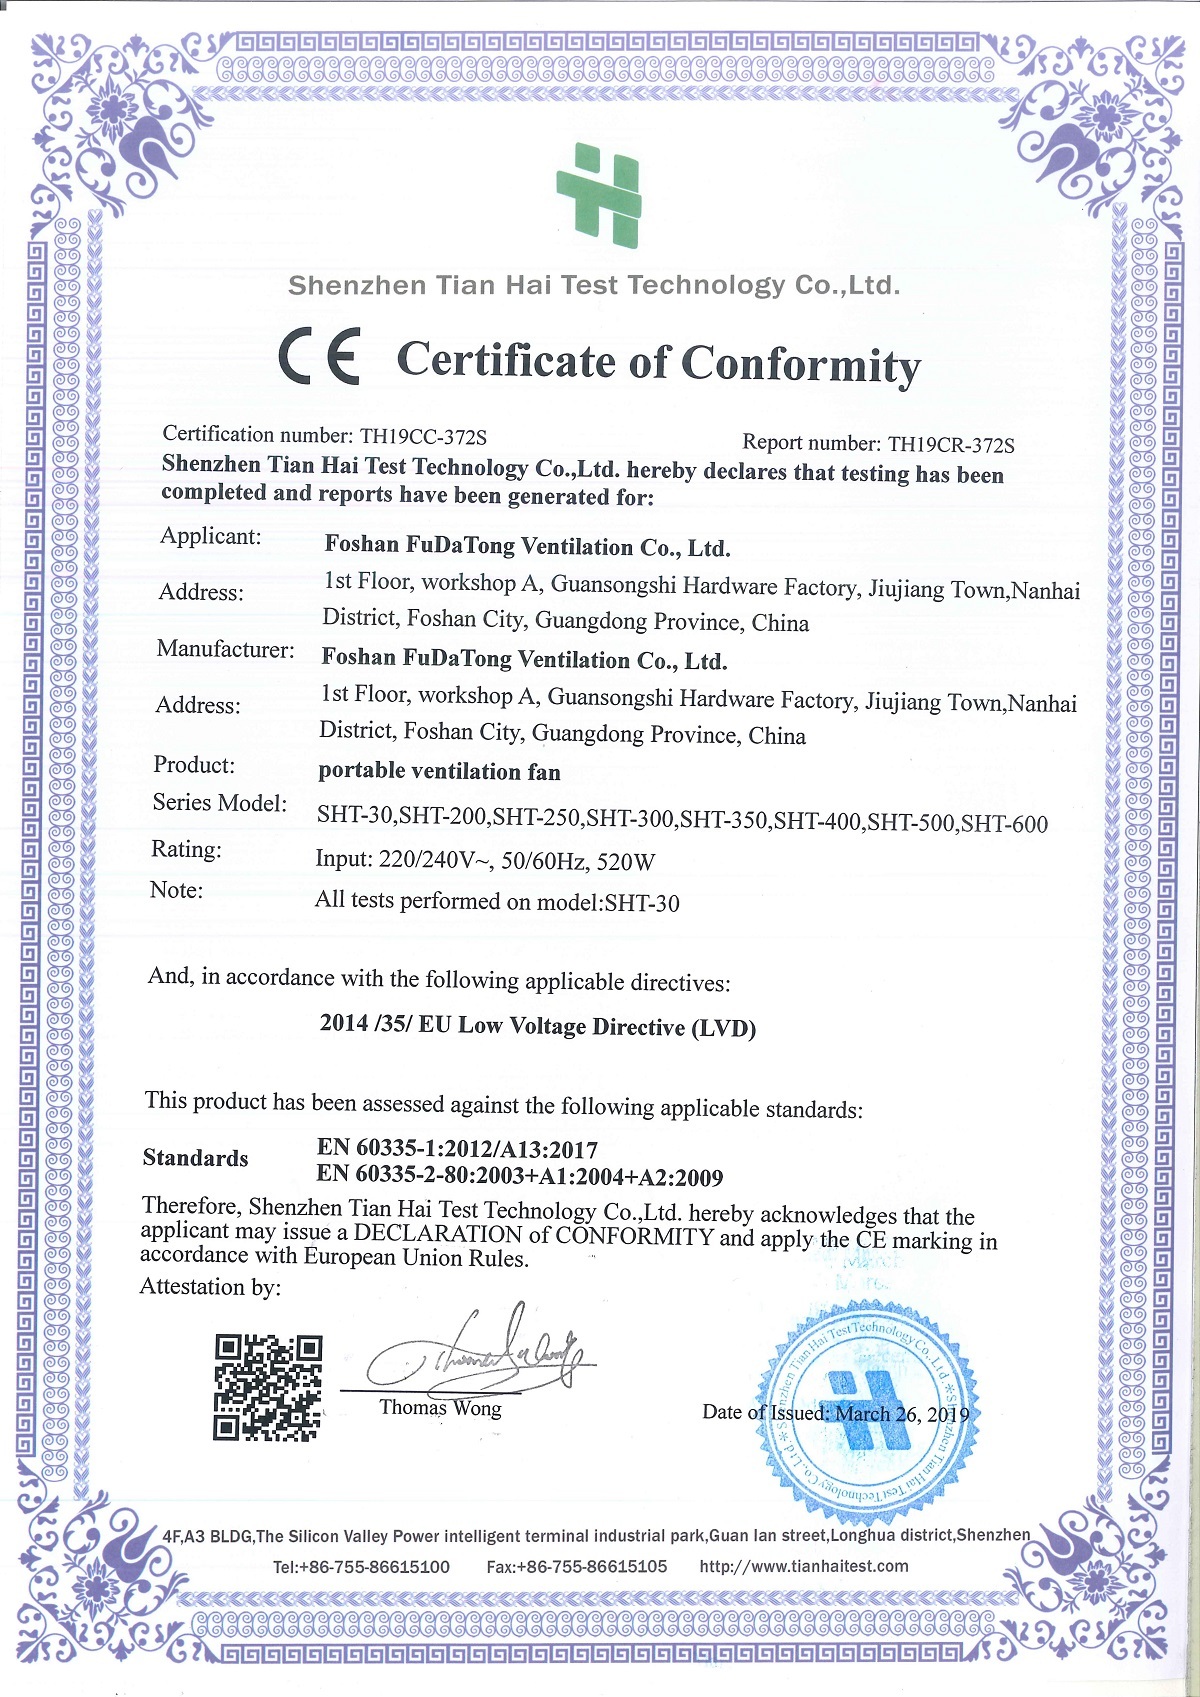 便携式风扇LVD CE证书